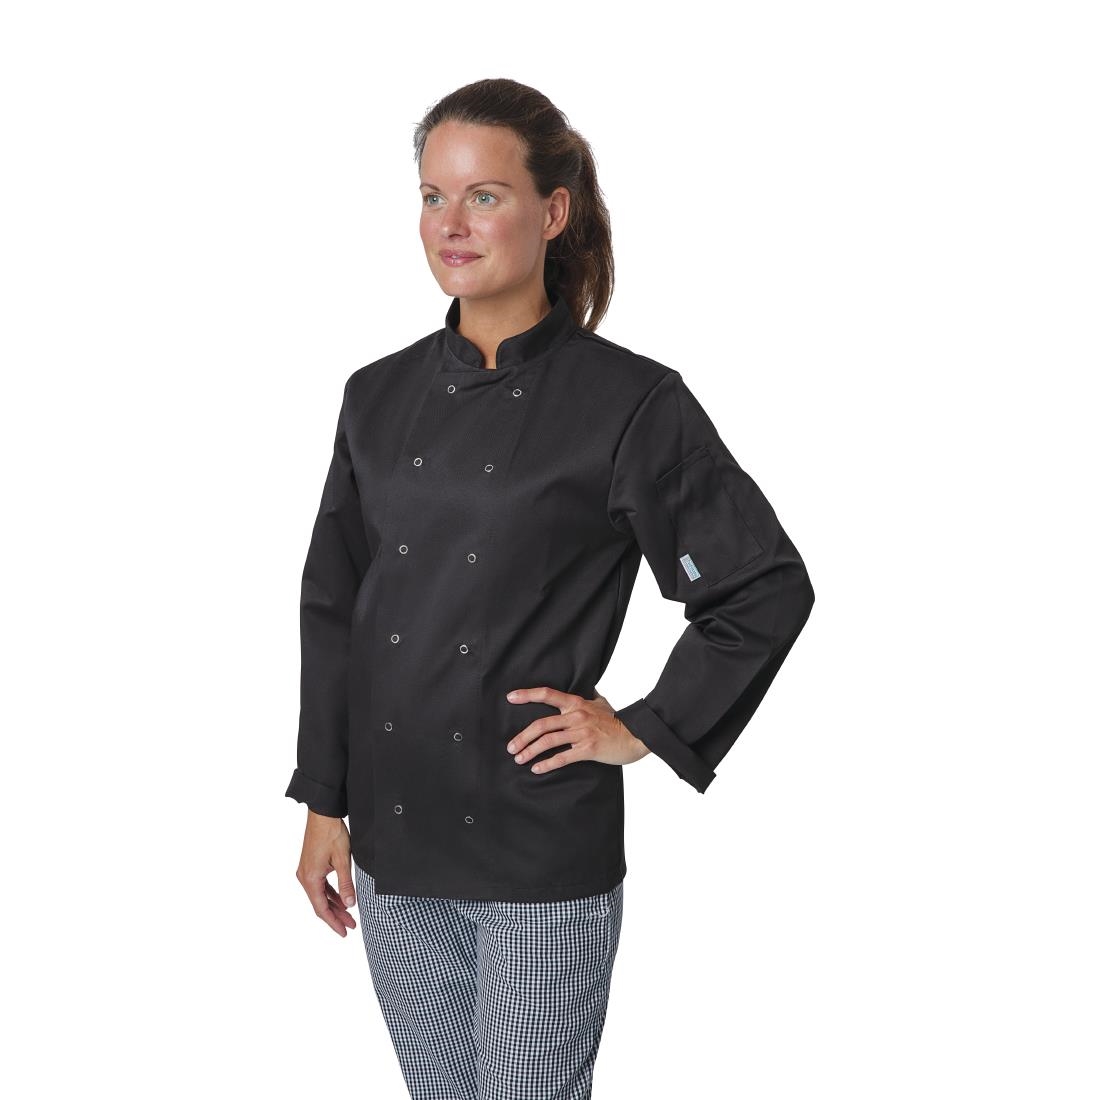 Whites Vegas Unisex Chefs Jacket Long Sleeve Black 3XL